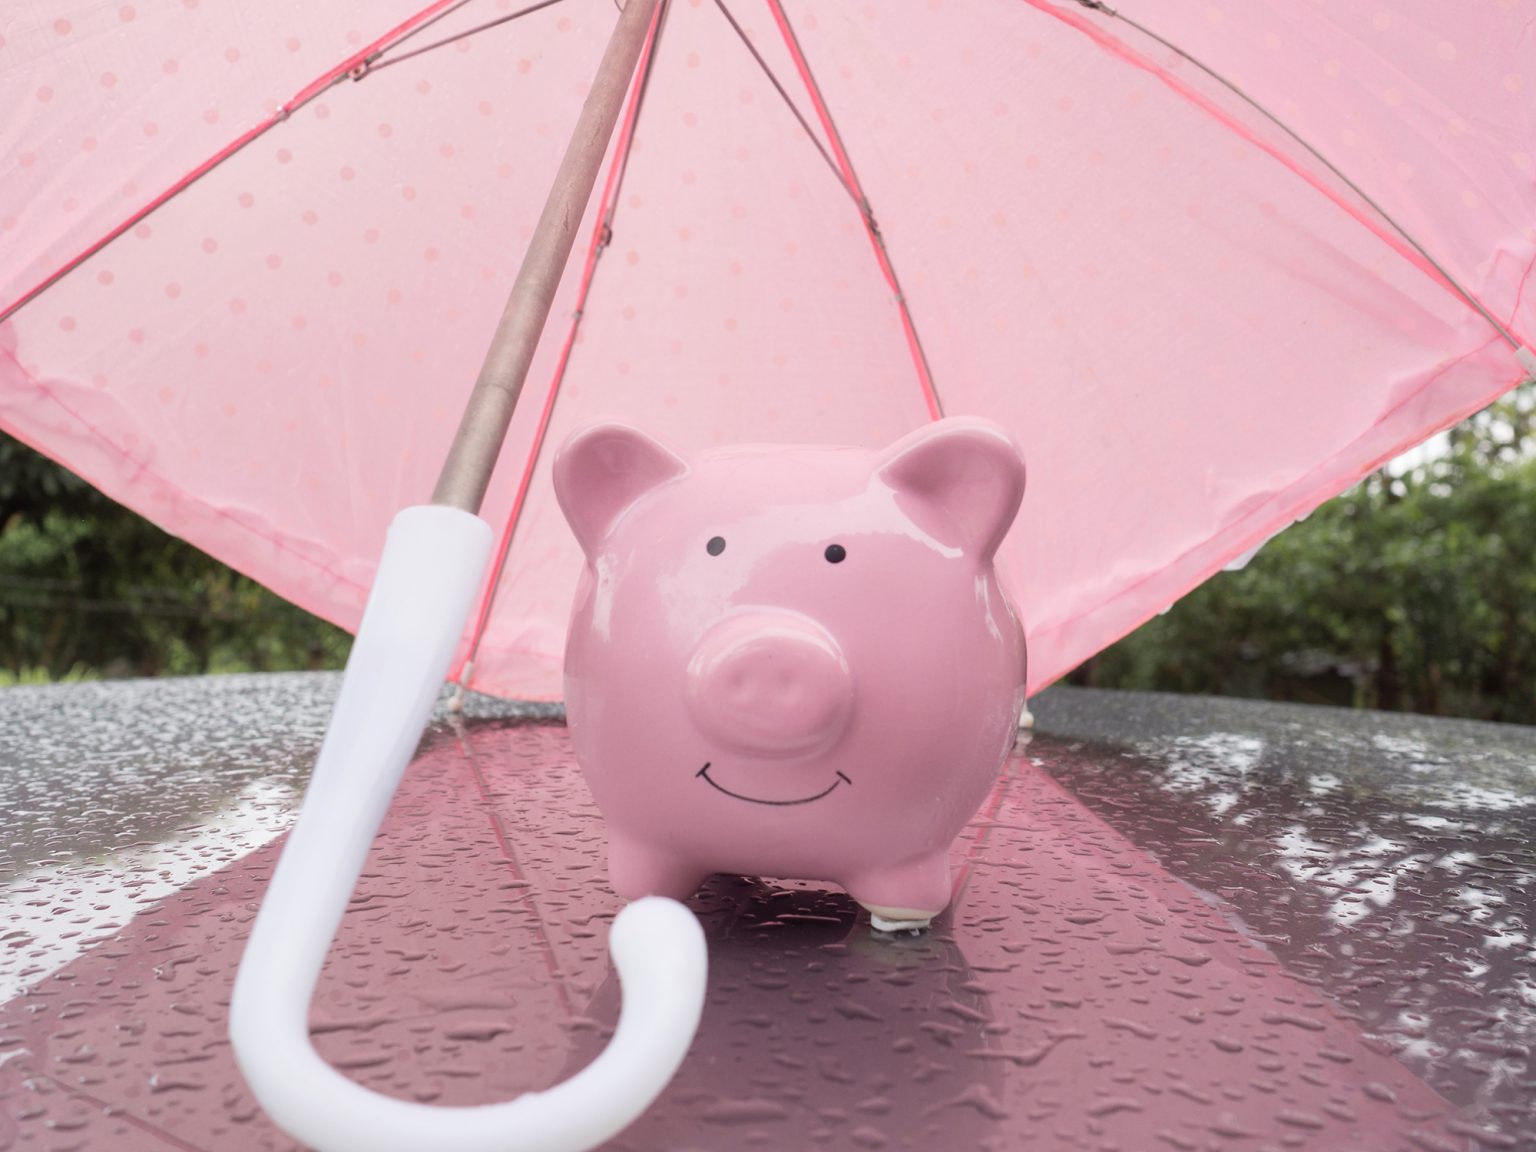 Piggy bank under an umbrella on a rainy day